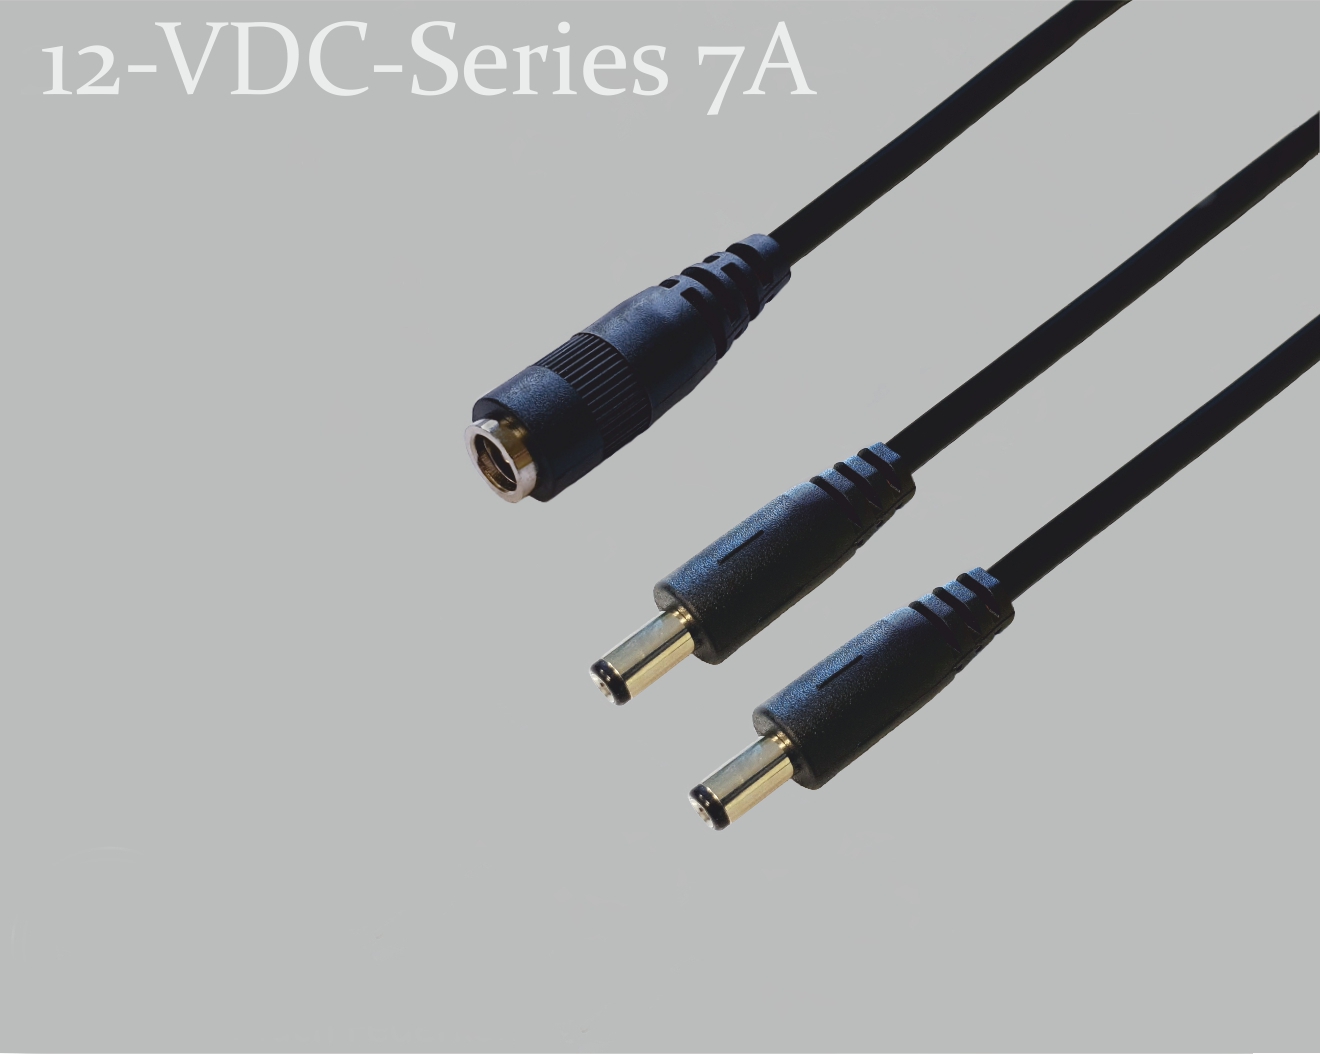 12-VDC-Series 7A, DC-Verteiler 1x DC-Kupplung auf 2x DC-Stecker mit Federkontakt,  2,5x5,5mm, Rundkabel 2x0,5mm², schwarz, 0,3m